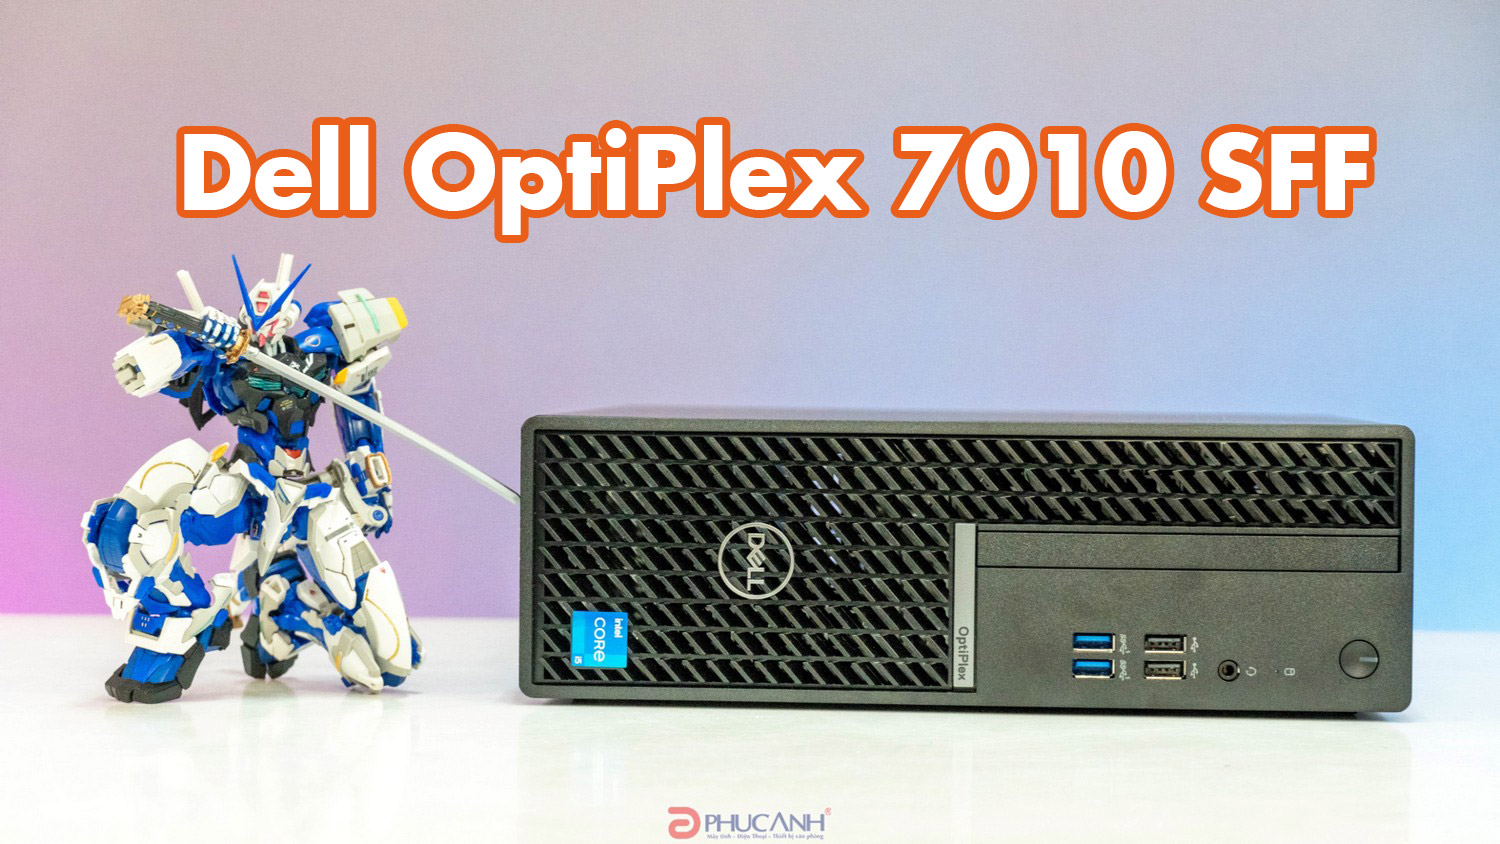 Đánh giá Dell OptiPlex 7010 SFF - Nhỏ gọn, hiệu suất công việc cao cho người dùng doanh nghiệp